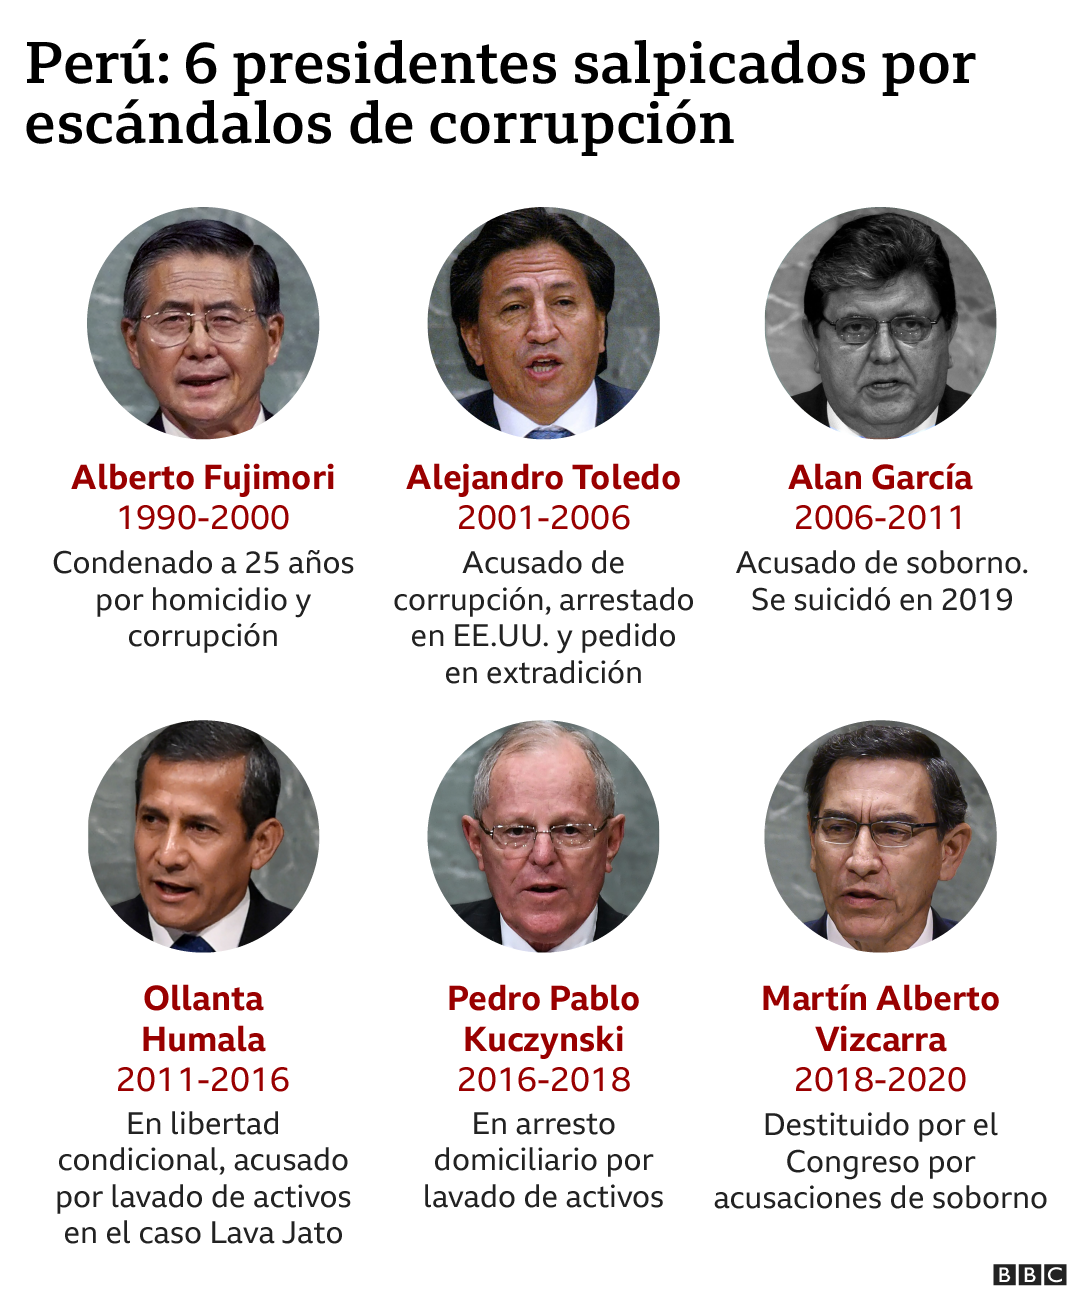 Inforgrafia de BBC Mundo sobre presidentes de Peru